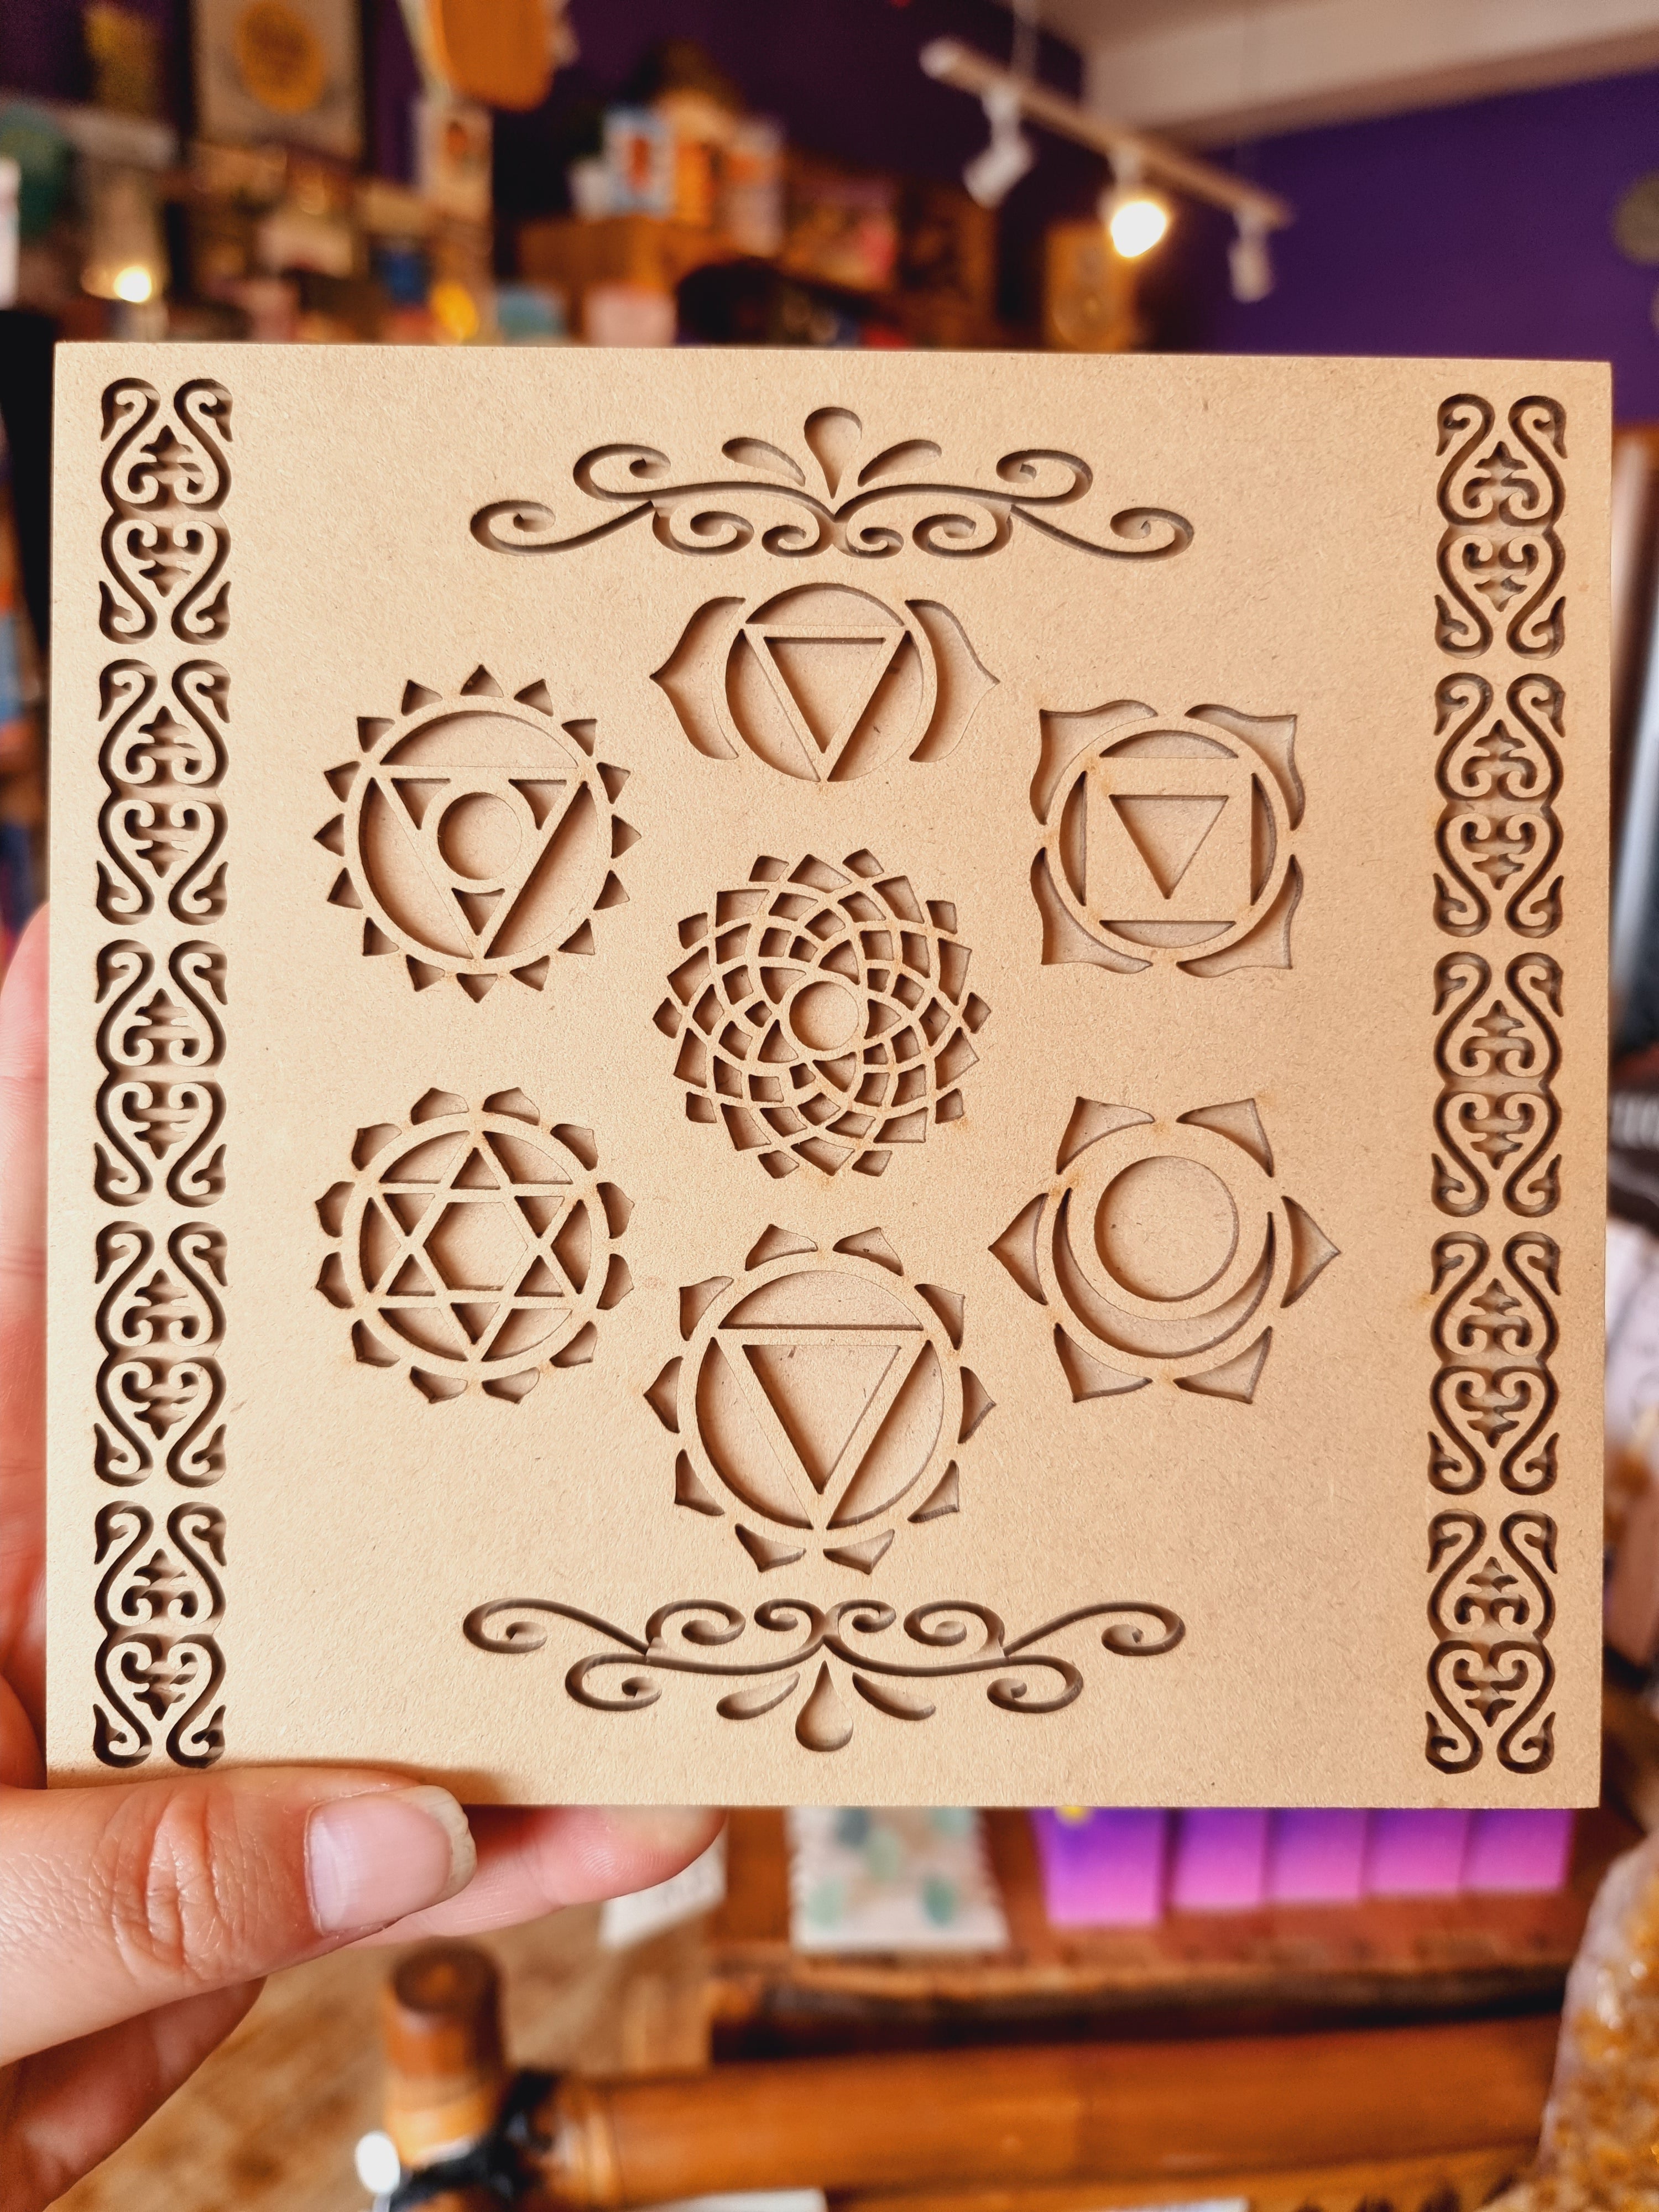 7 Chakra Crystal Set In Box